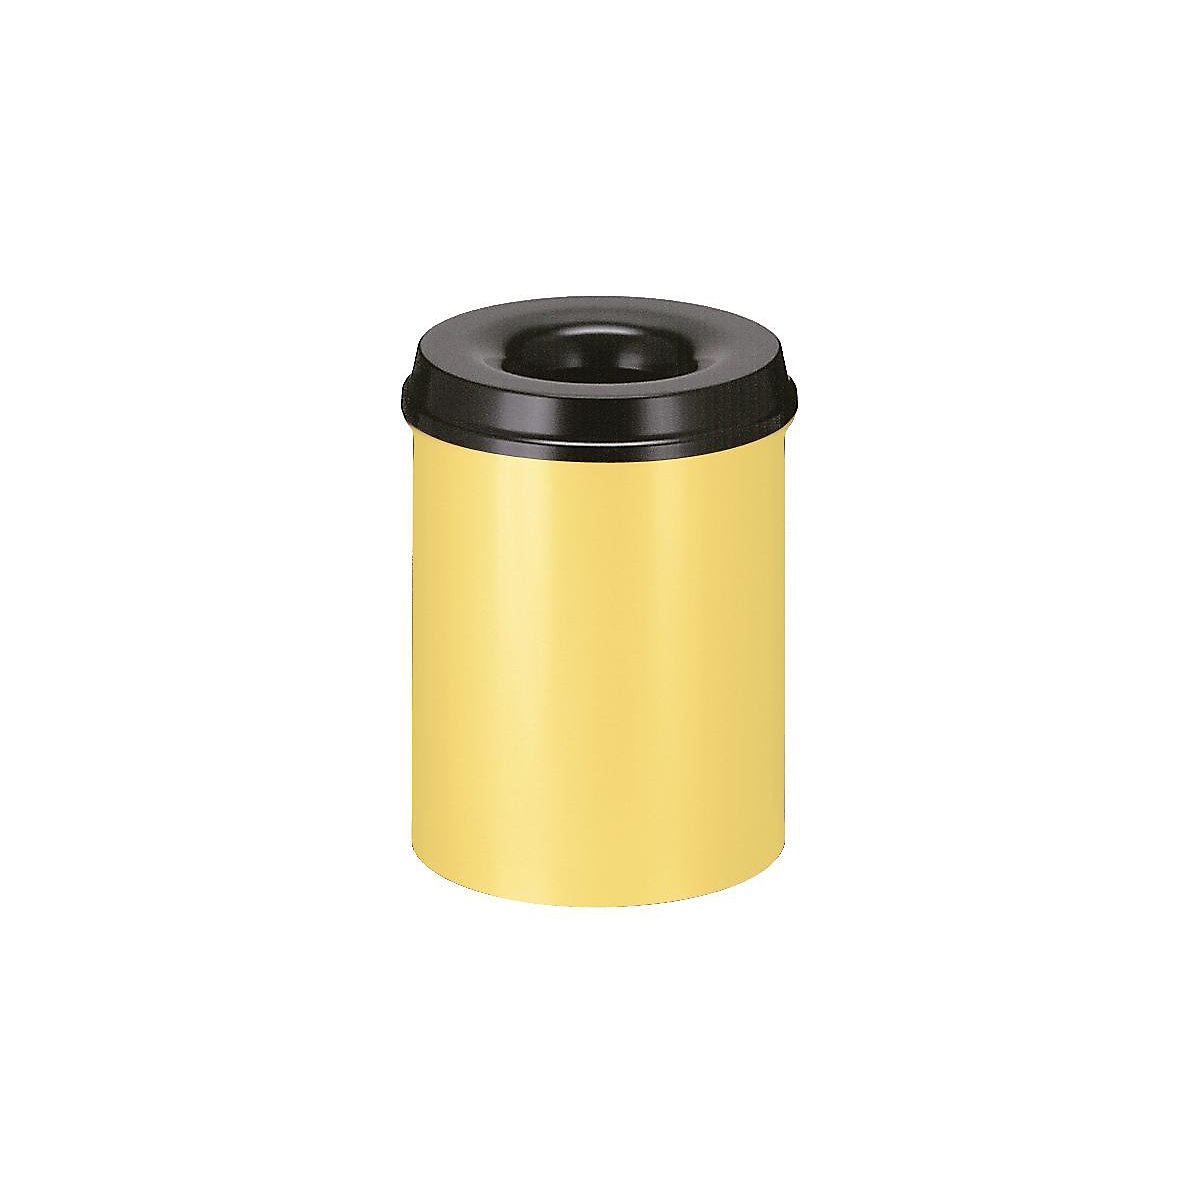 Corbeille à papier auto-extinguible, capacité 15 l, h x Ø 360 x 255 mm, corps jaune / étouffoir noir